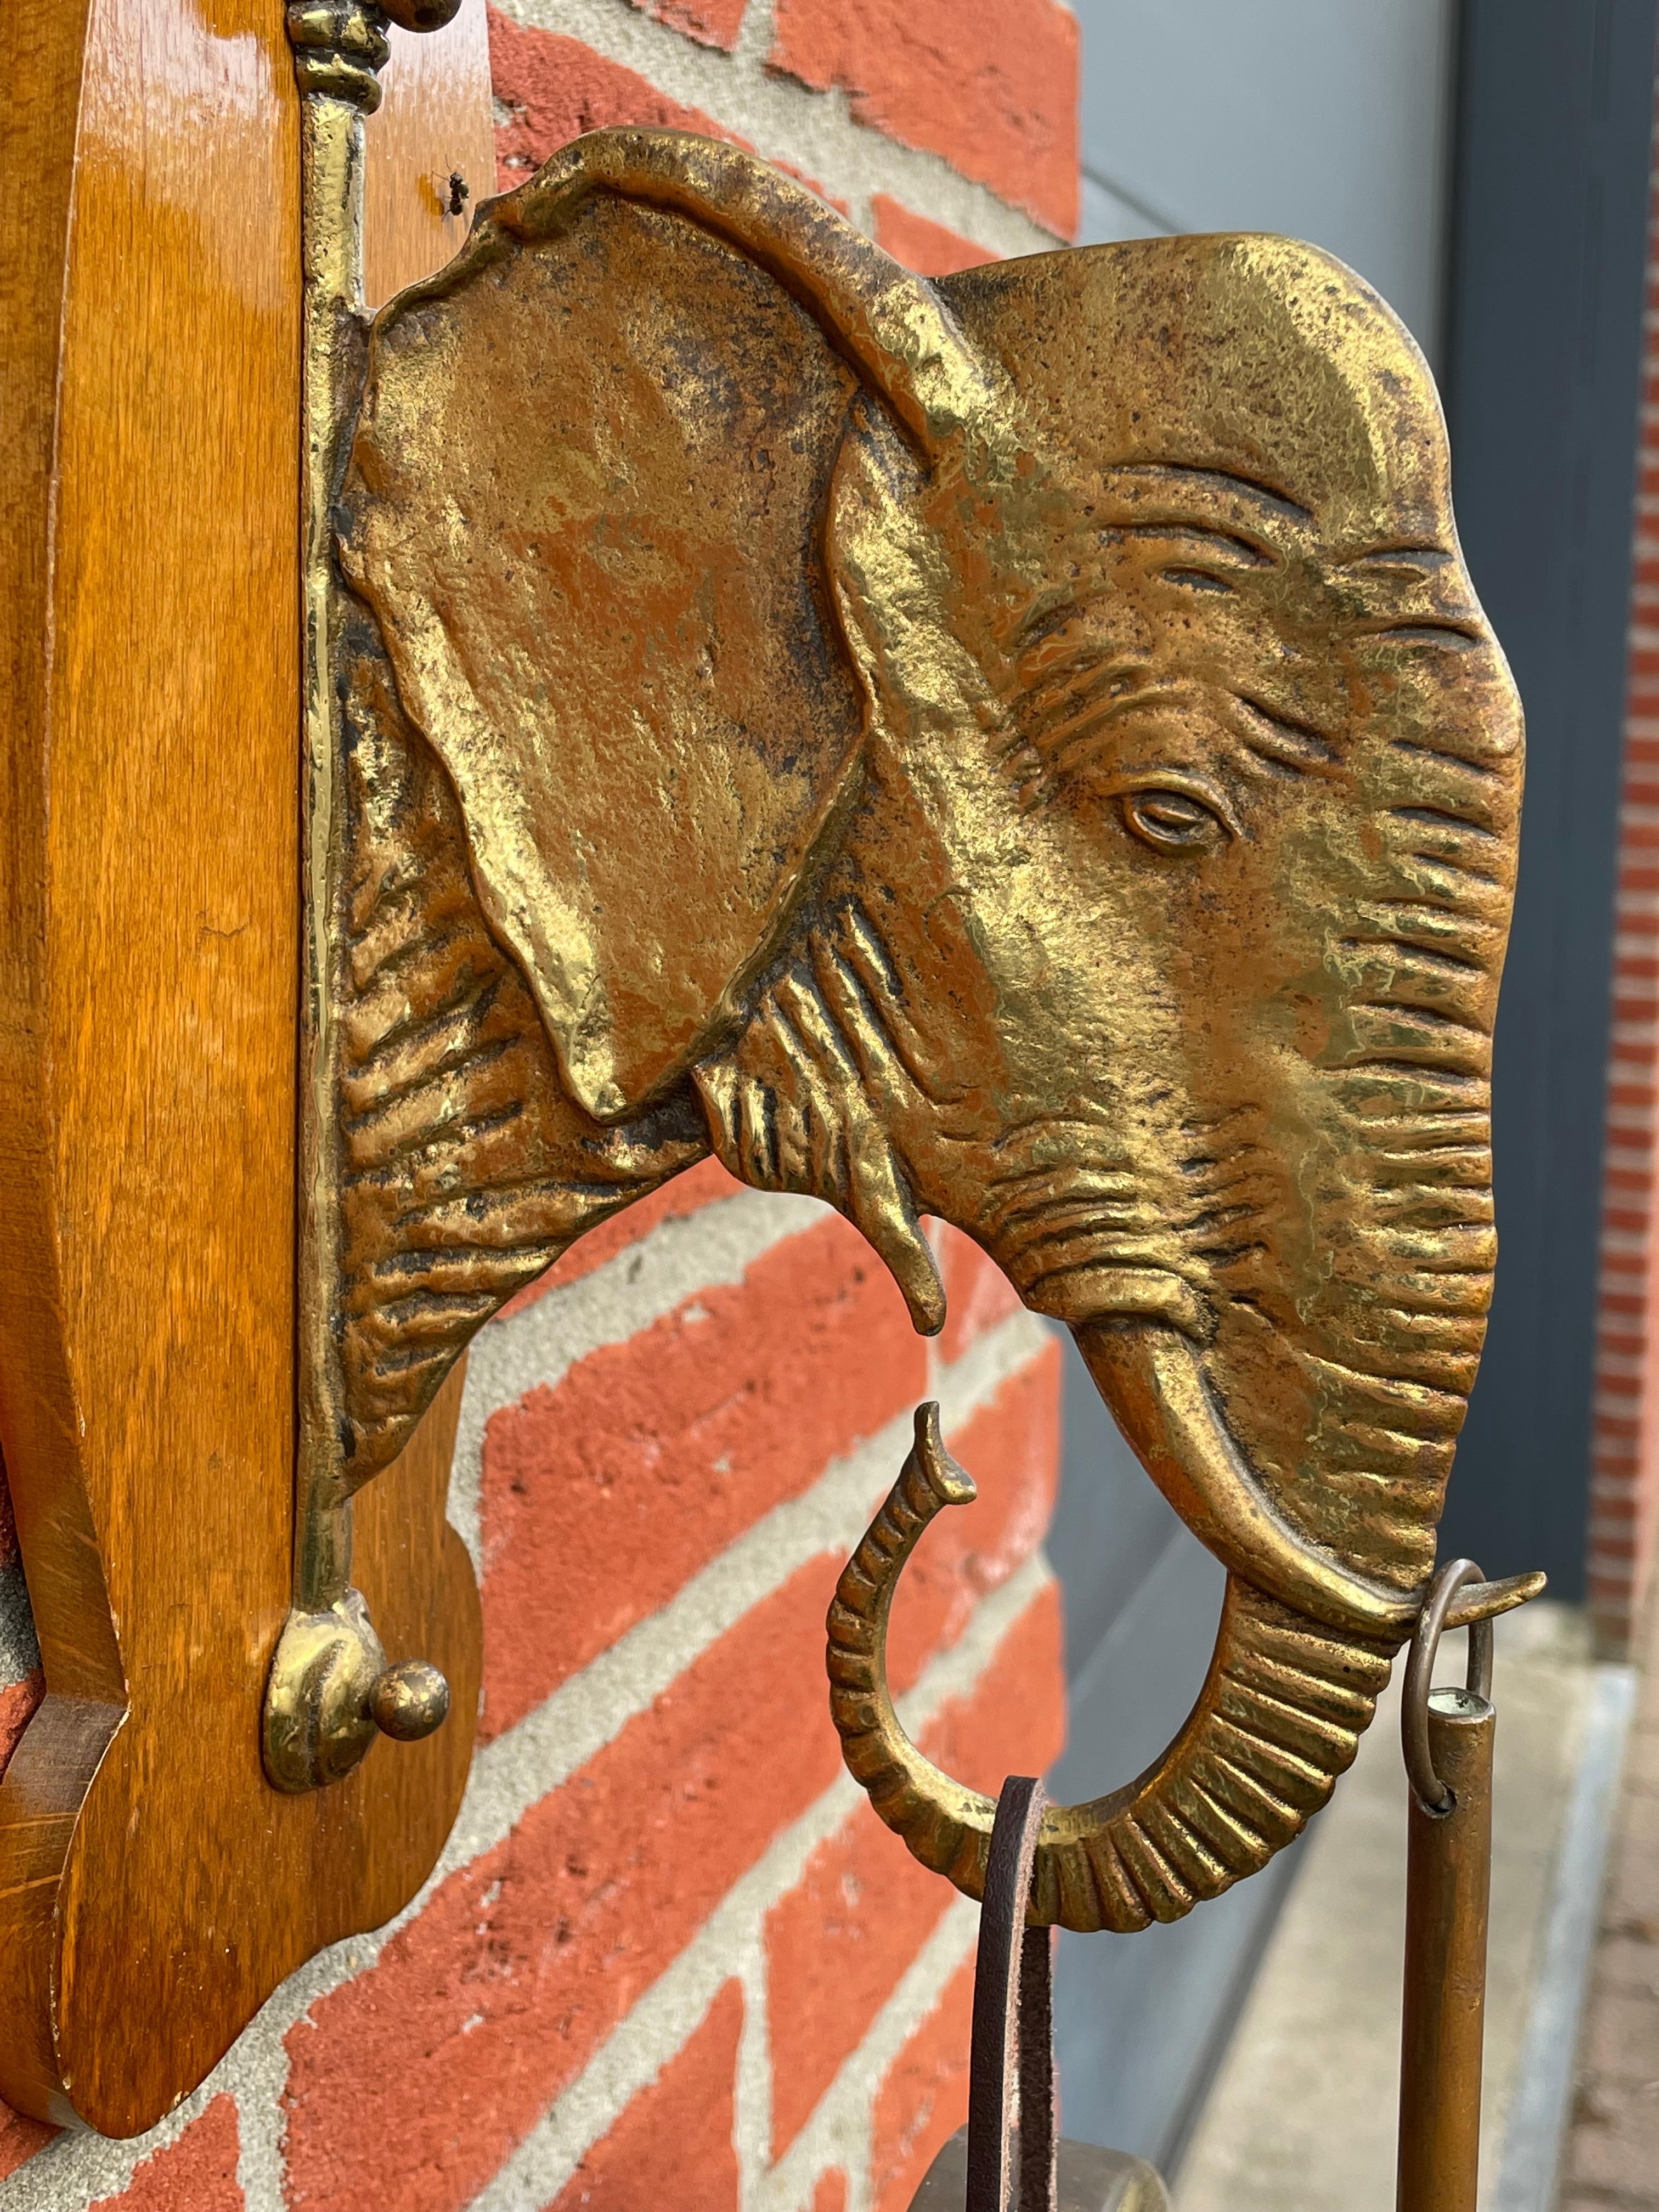 Sehr seltener und auffälliger (viele Wortspiele beabsichtigt) Arts & Crafts Wandgong.

Dieser bemerkenswerte Hausgong mit einer Elefantenskulptur wird sogar mit dem originalen und perfekt funktionierenden Schlagwerk geliefert. Der wunderschön